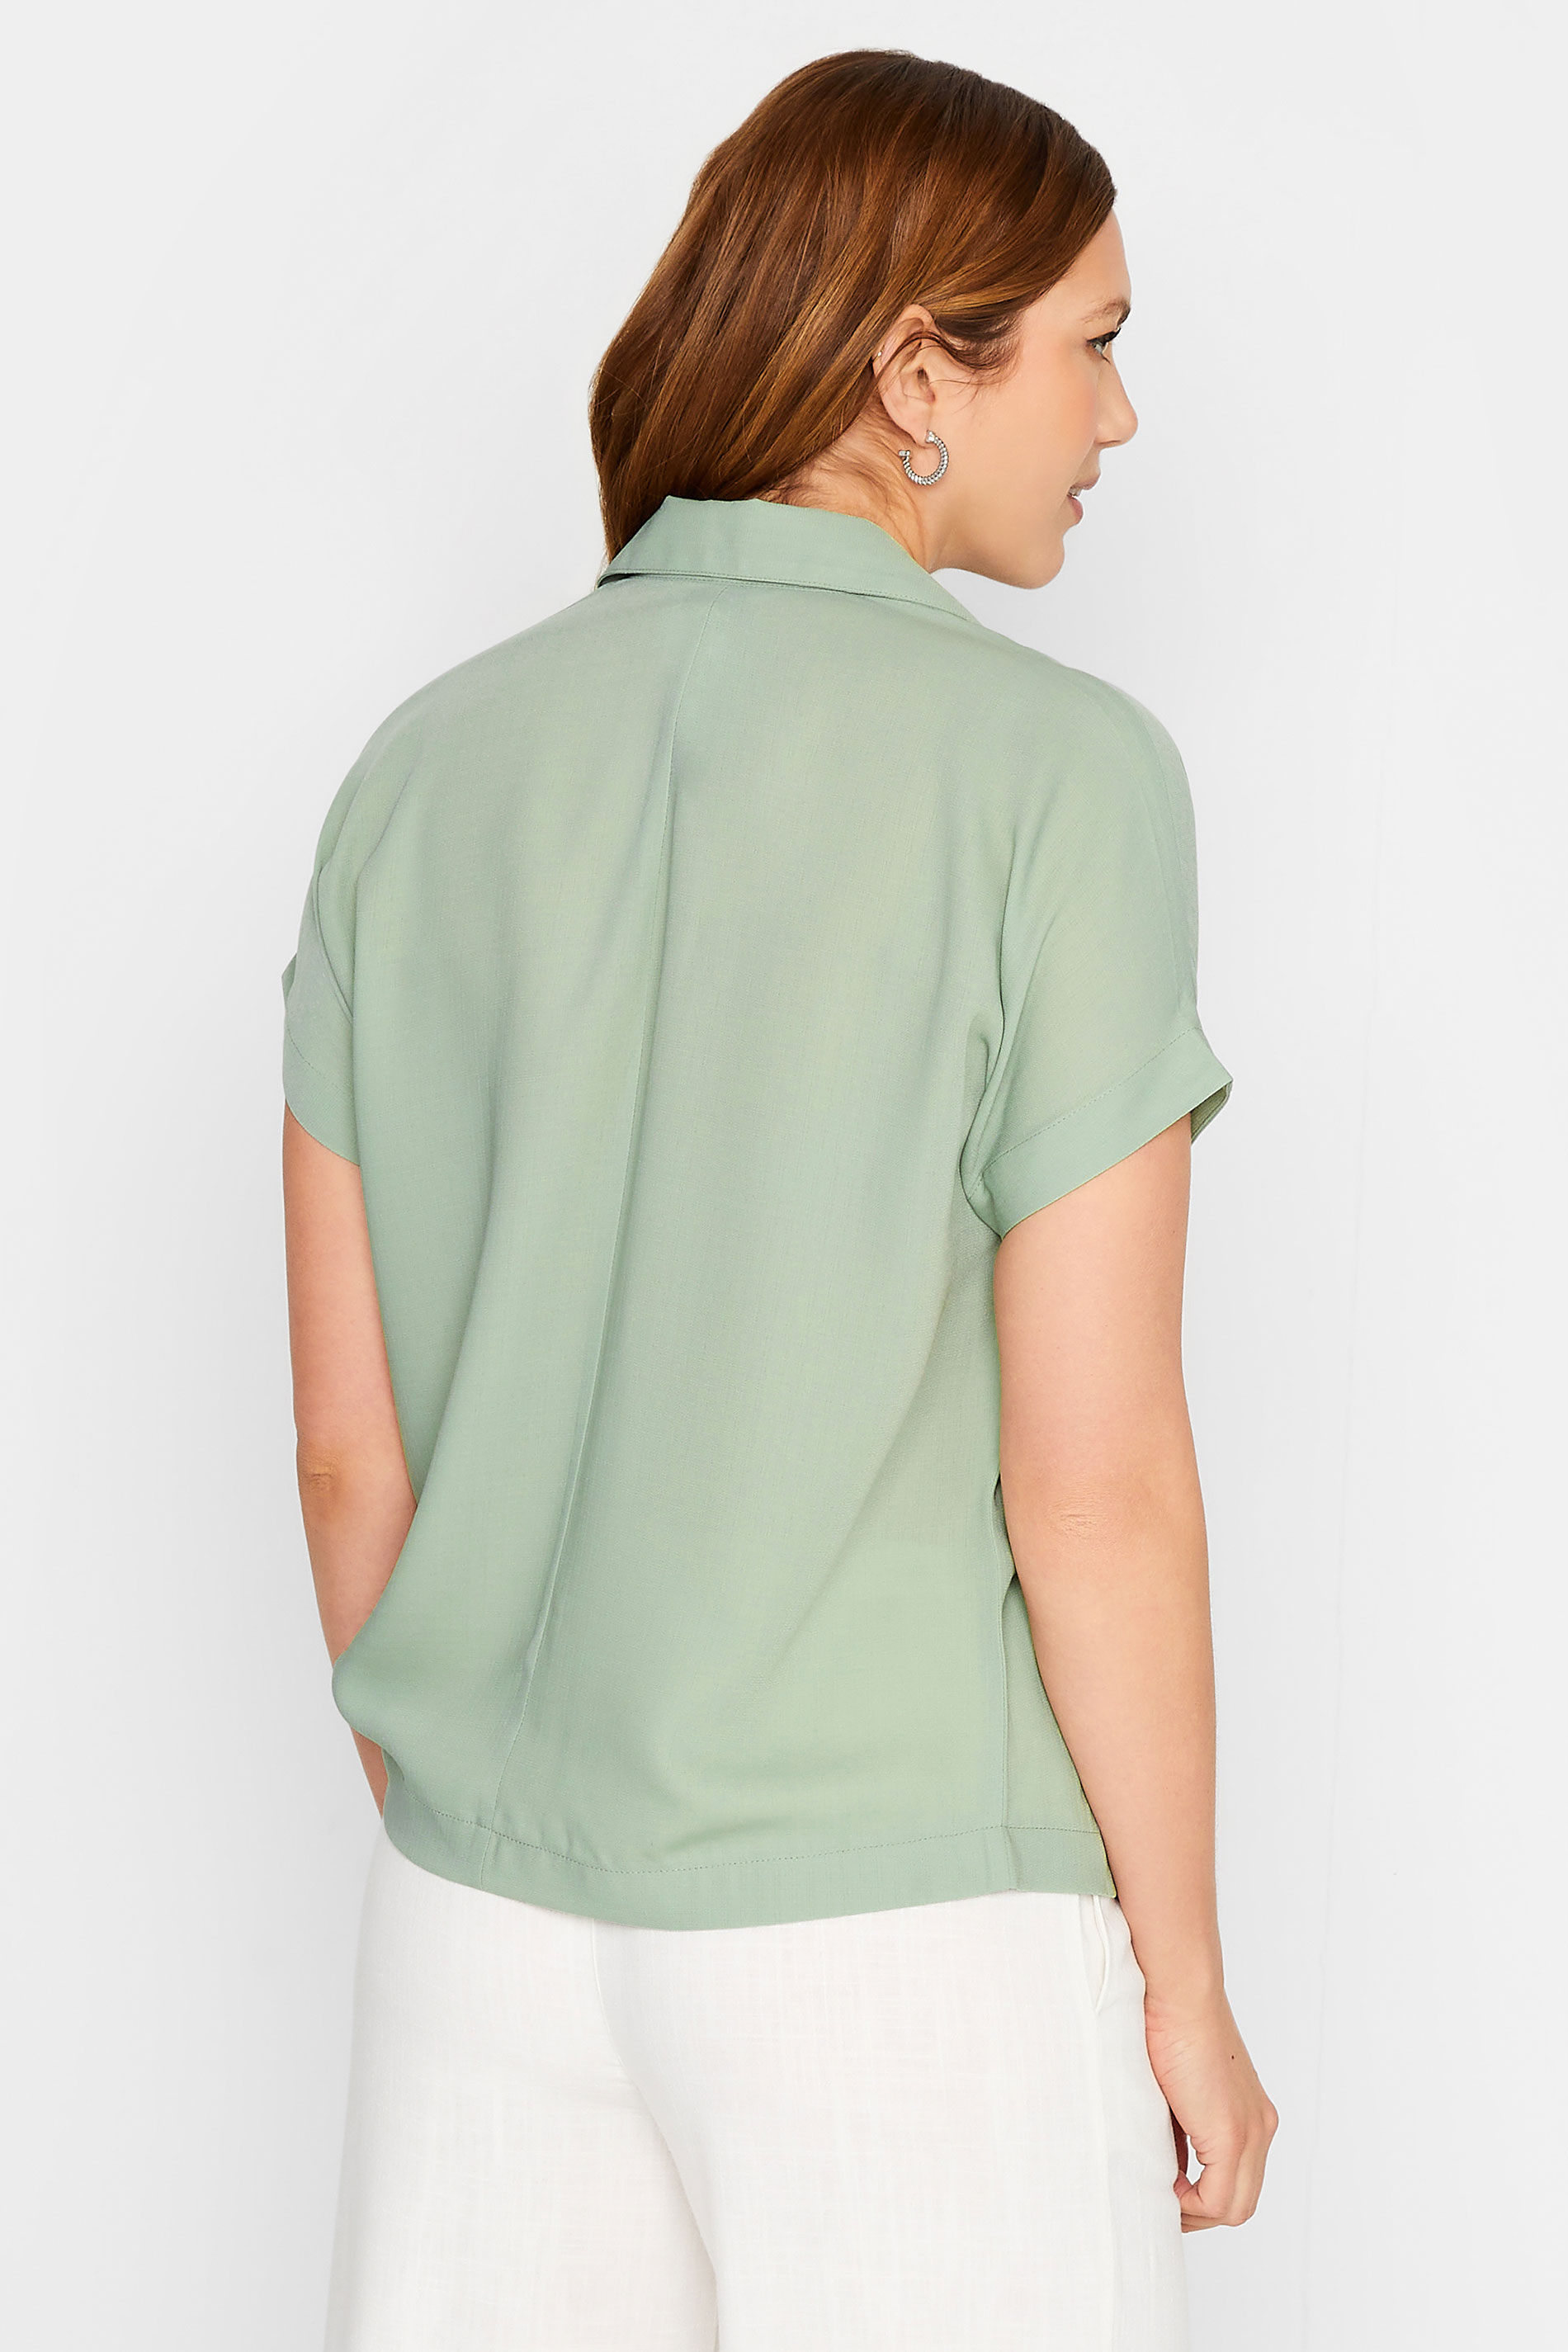 LTS Tall Women's Green Pocket Utility Shirt | Long Tall Sally 3